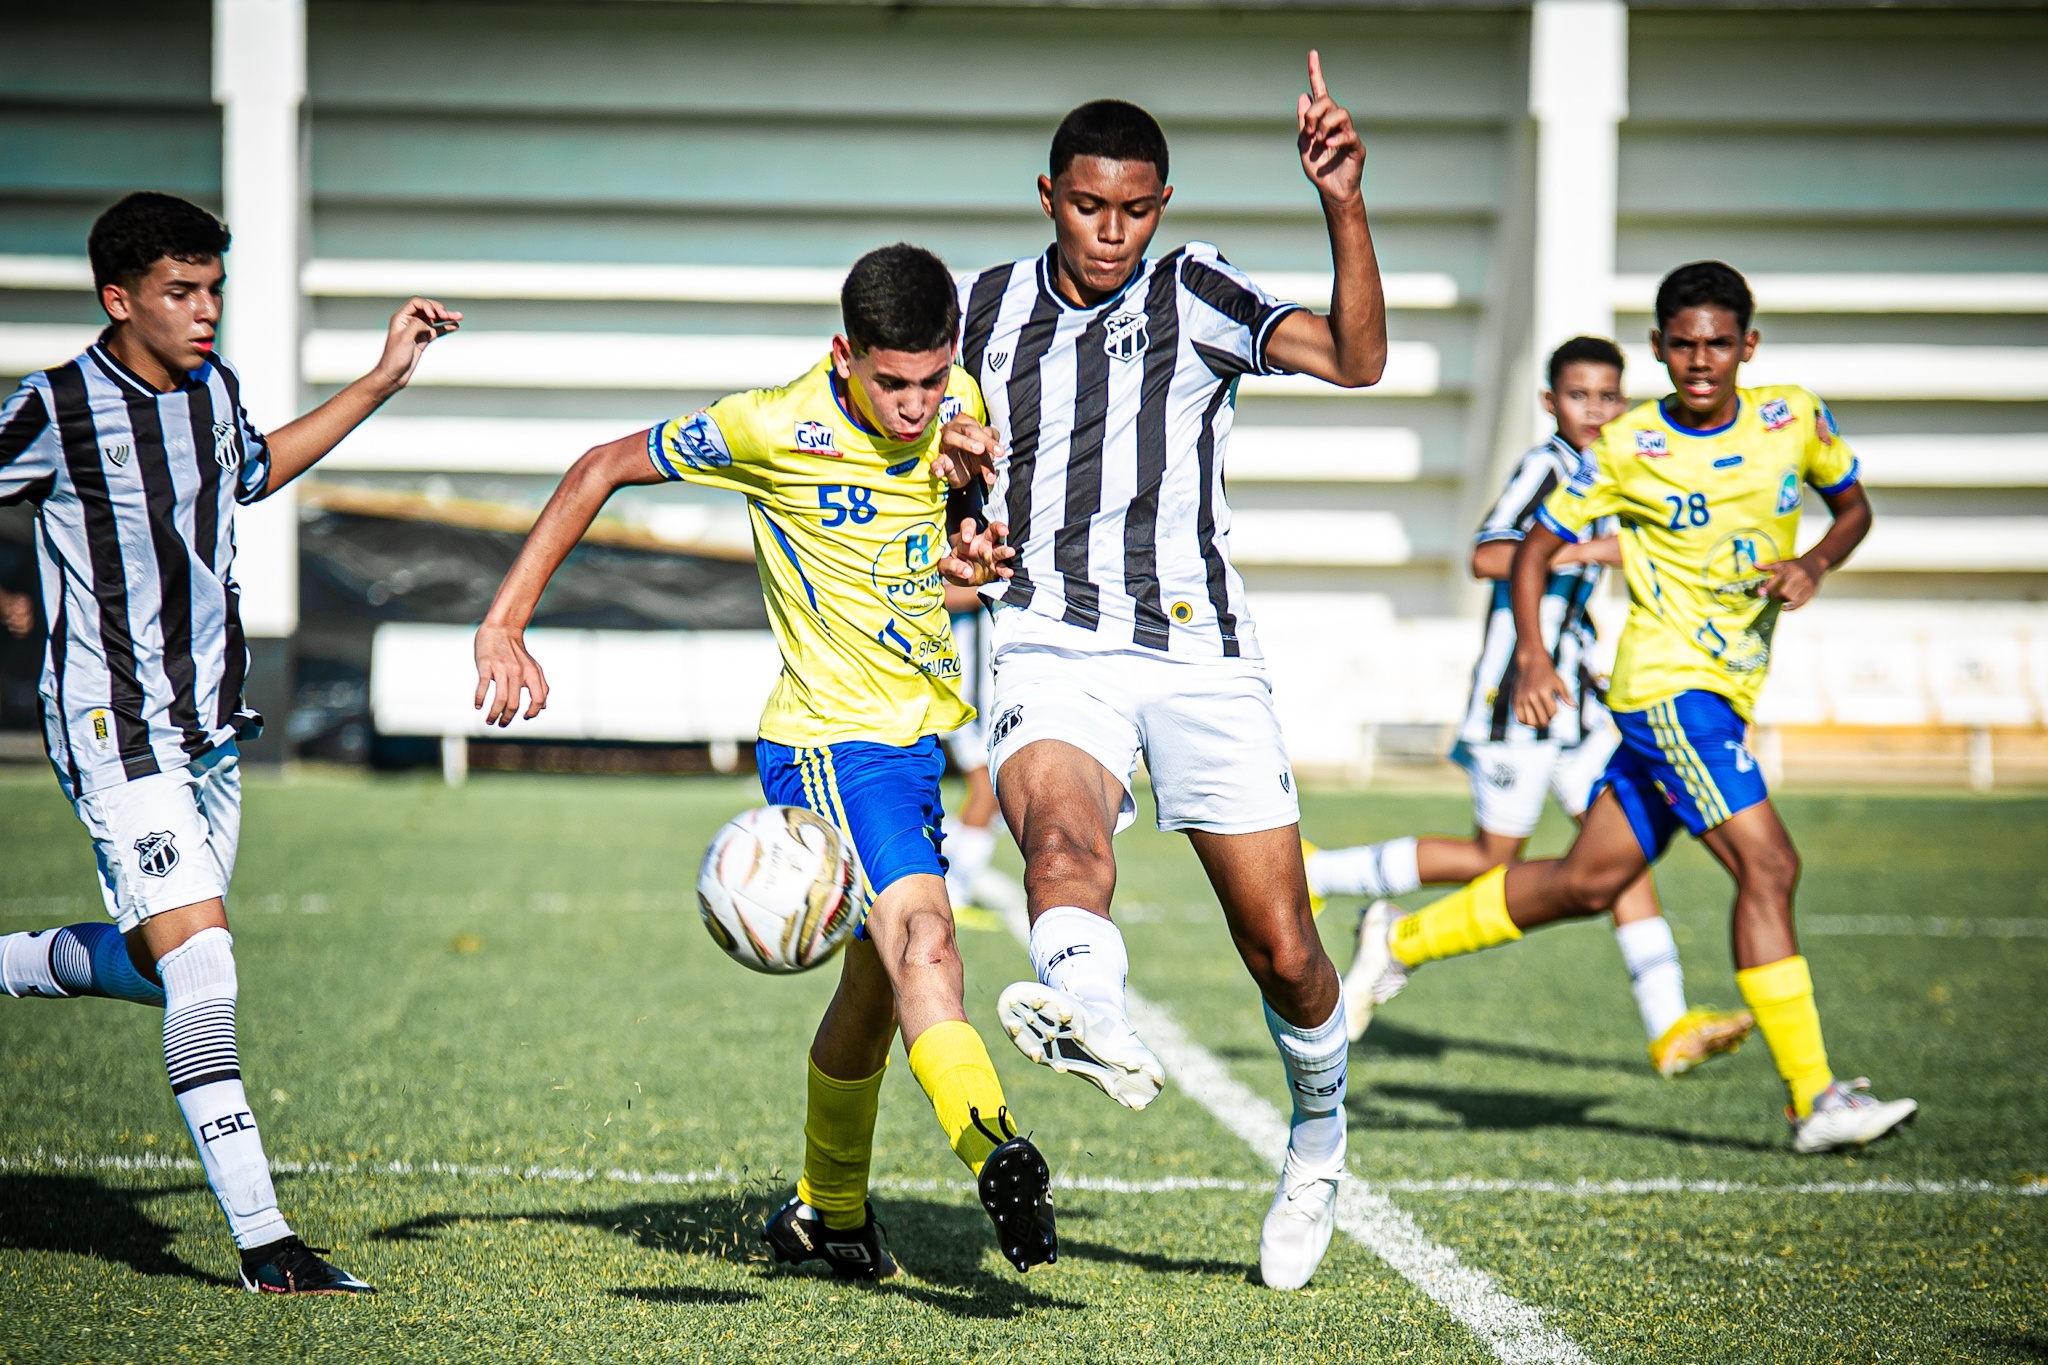 Base: Ceará vence o Projeto Semear por 3 a 0 e avança às finais da Copa Seromo de Futebol Sub-13